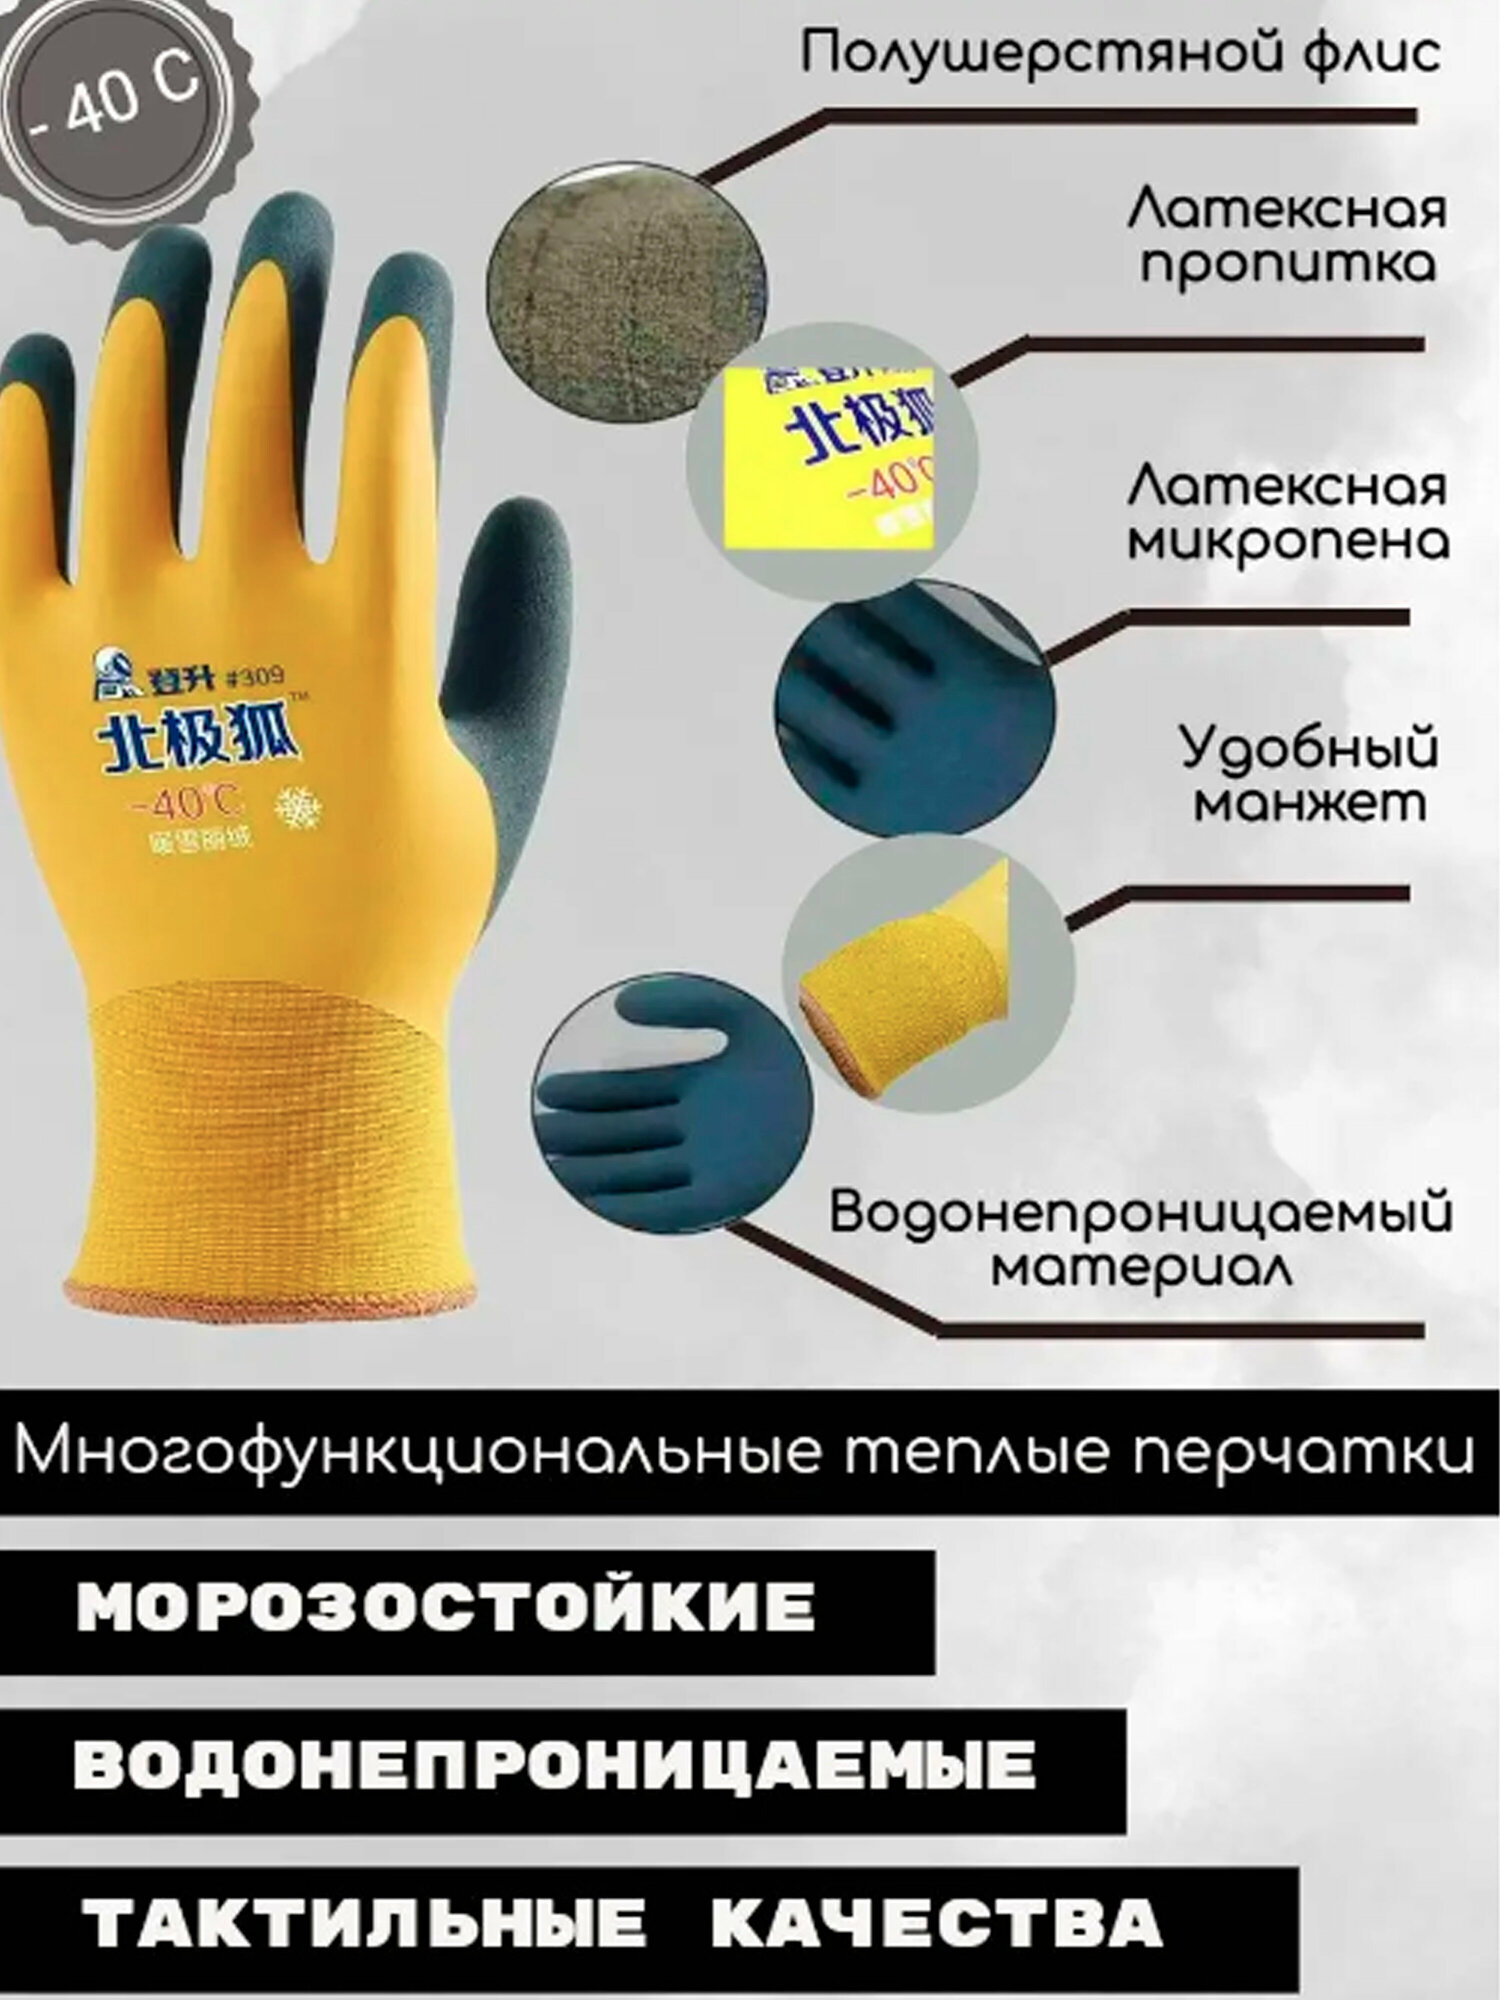 Перчатки многофункциональные теплые резиновые перчатки морозостойкие -30 влагонепроницаемые